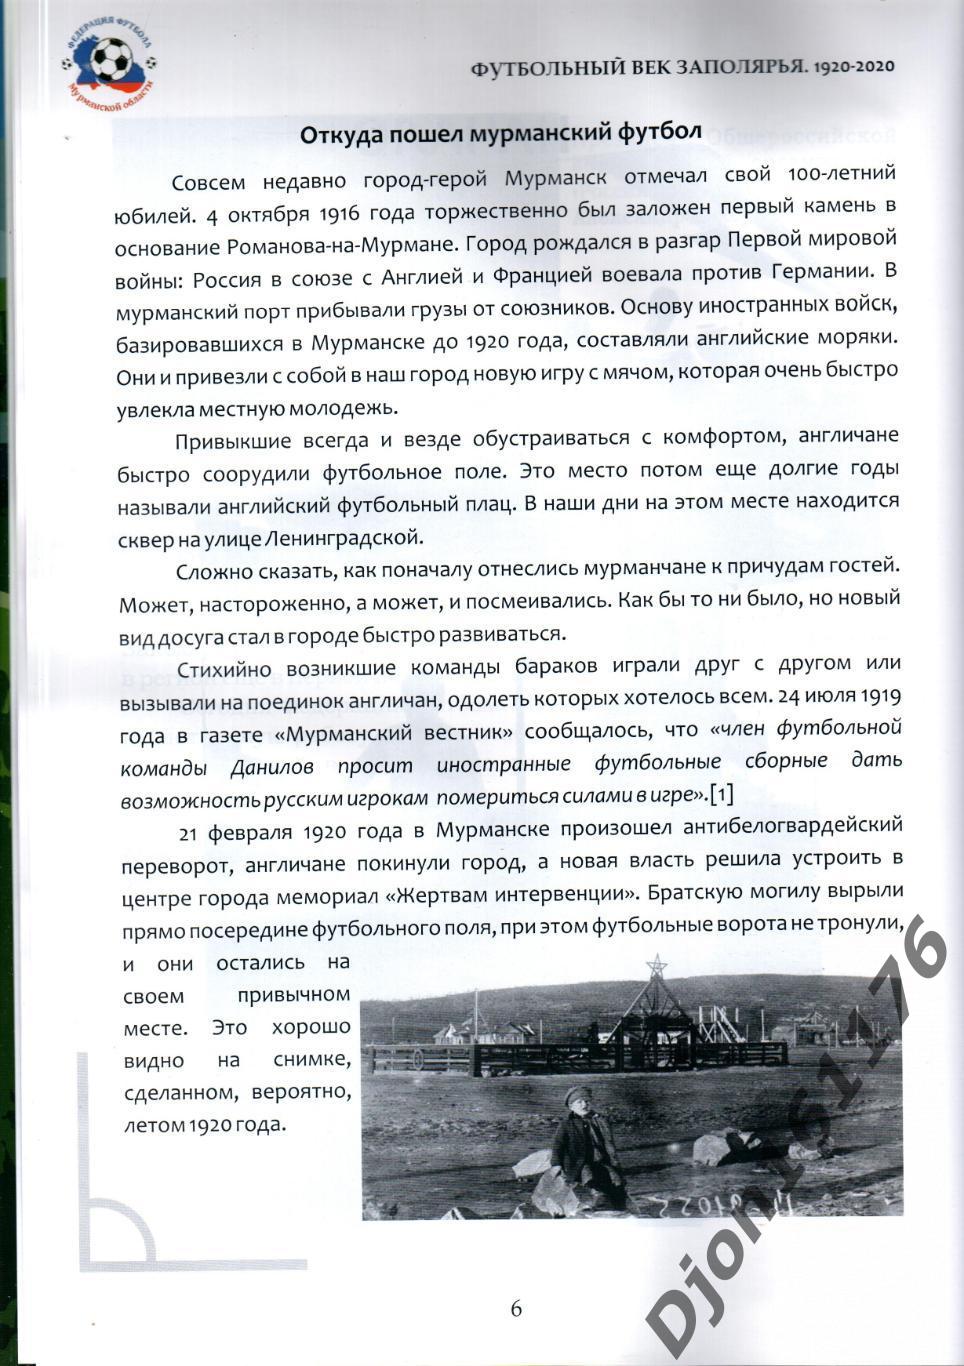 «Футбольный век Заполярья 1920-2020». 1